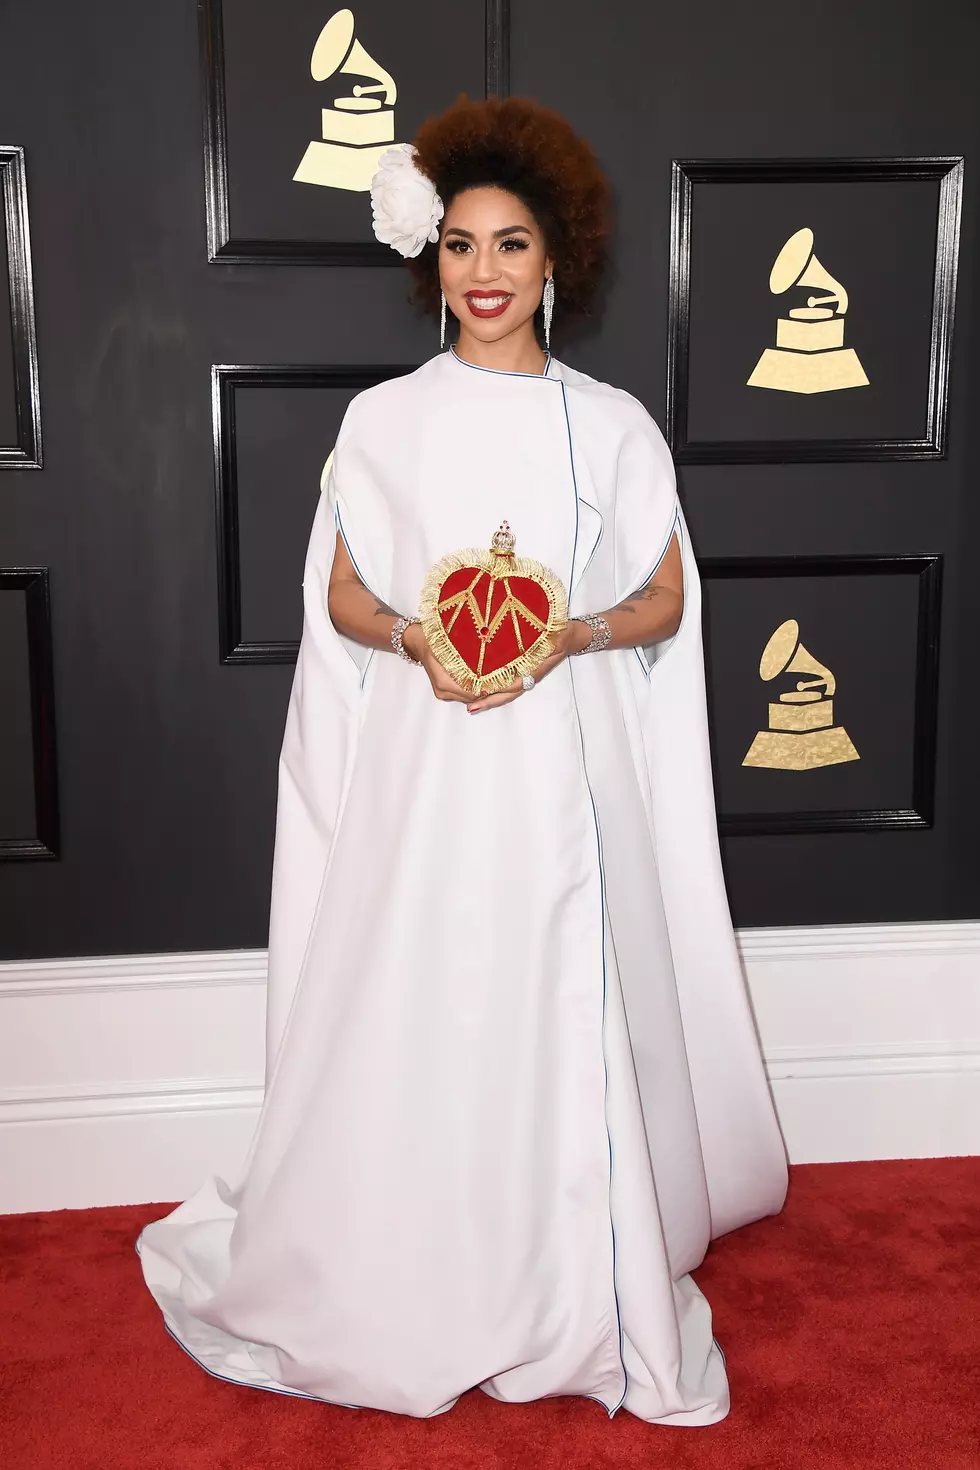 &#8216;Feminist&#8217; Singer Joy Villa Wears Trump Dress at 2017 Grammy Awards